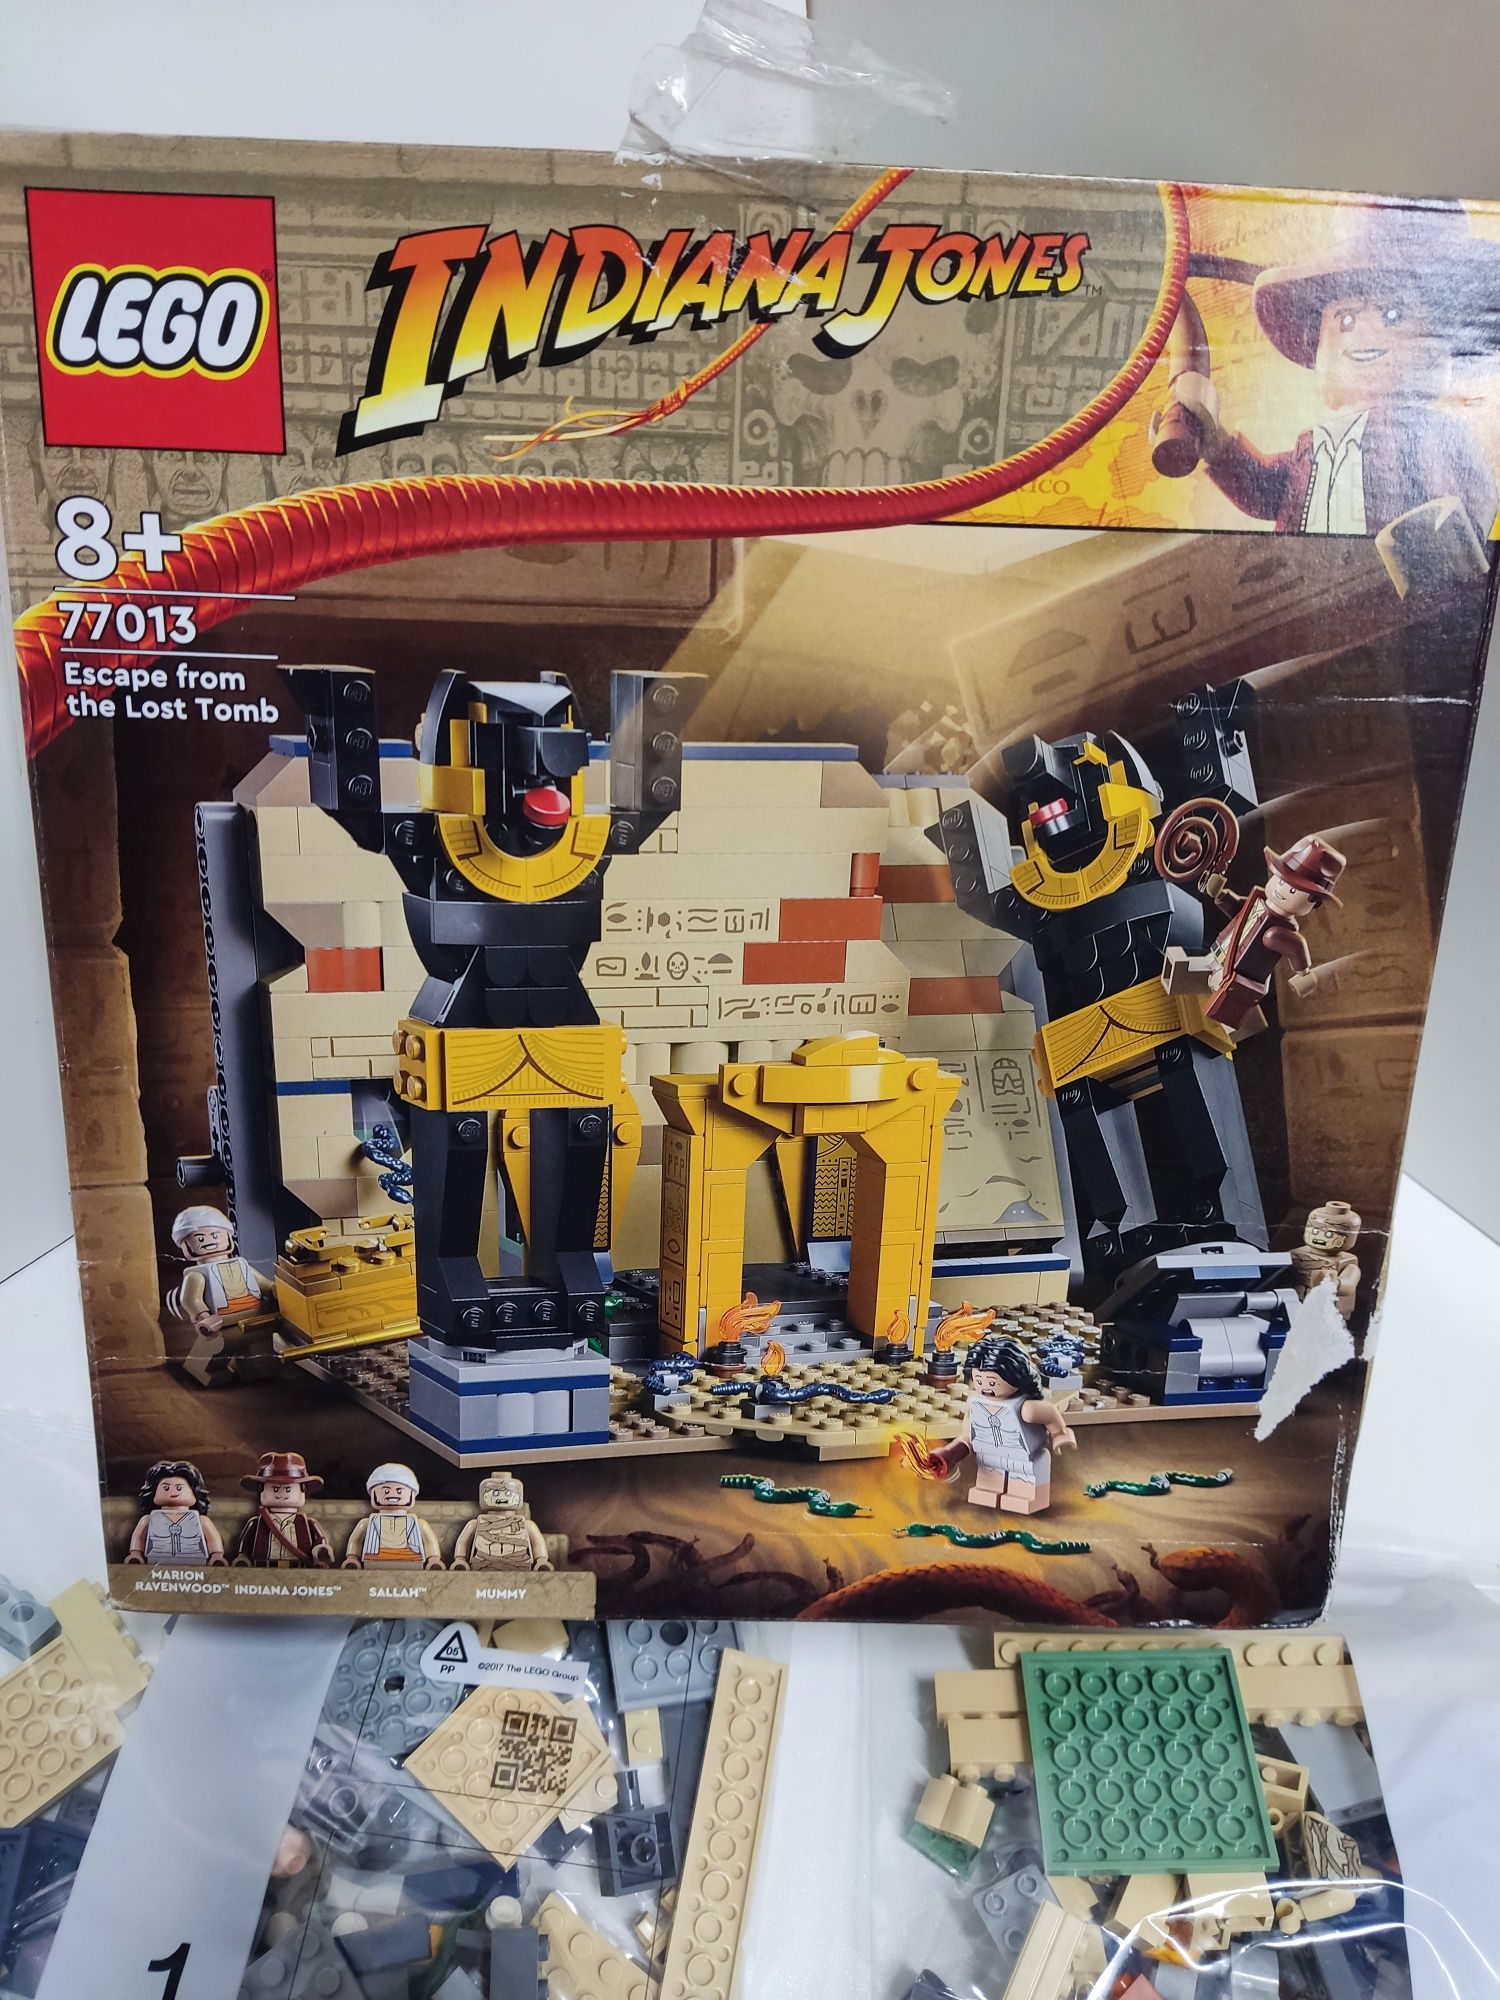 Nowe LEGO Indiana Jones 
Ucieczka z zaginionego grobowca
Dzieci mogą p